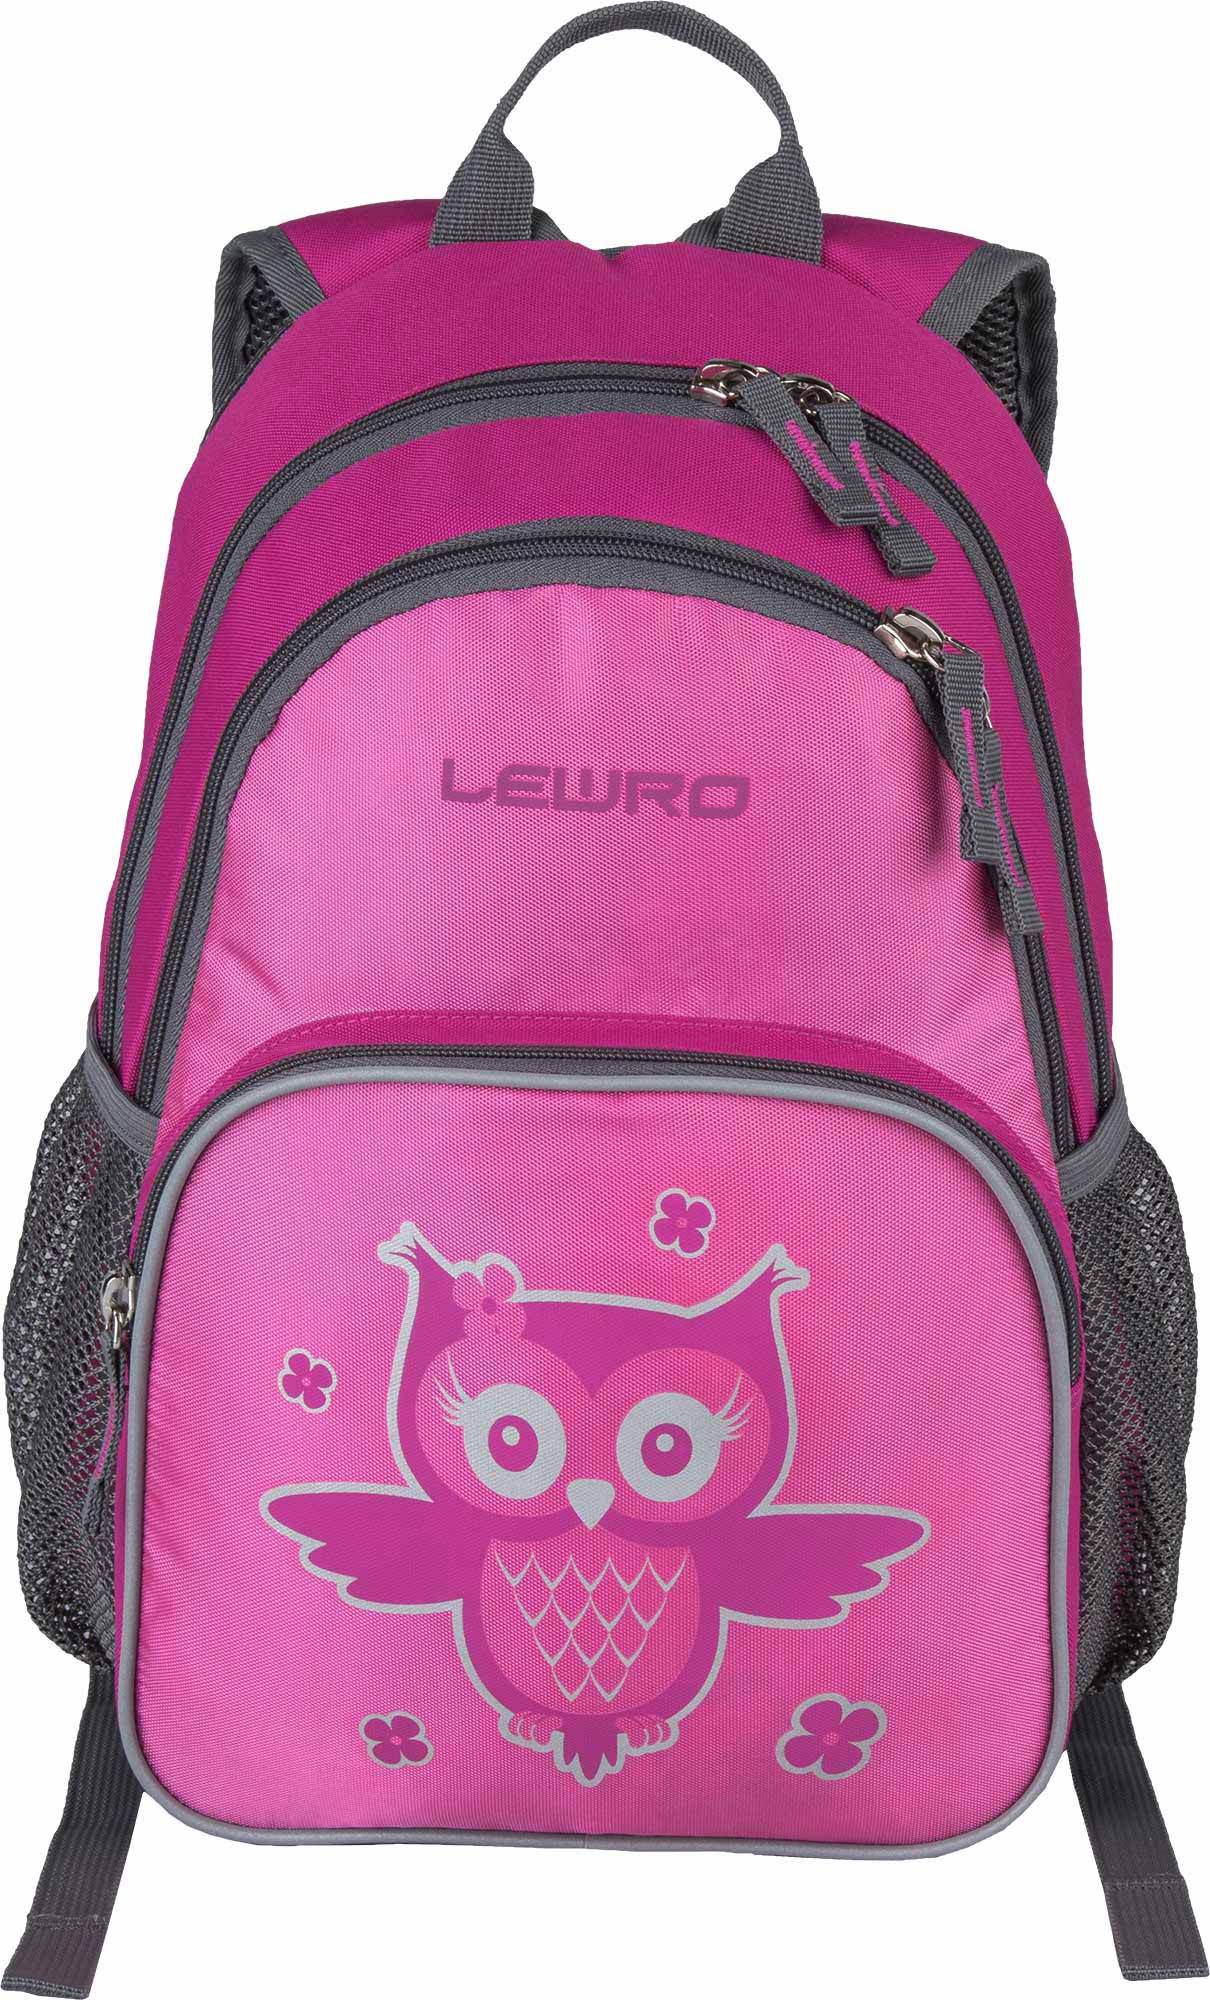 Universal children's backpack